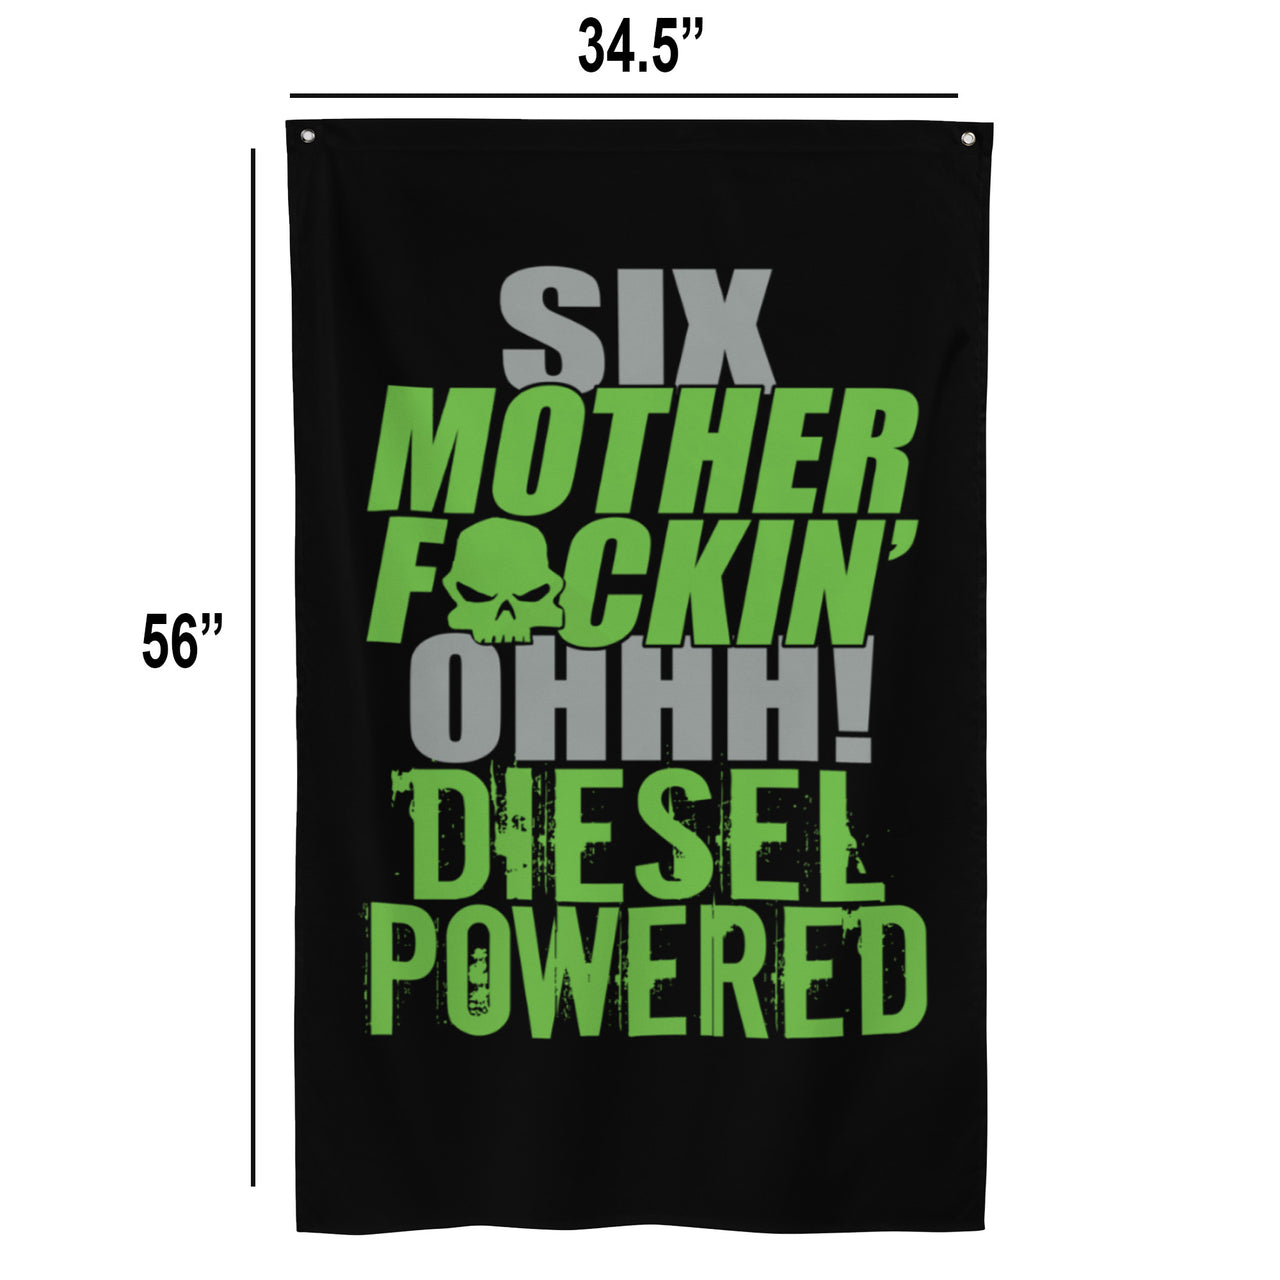 6.0 Power Stroke Diesel Flag dimensions